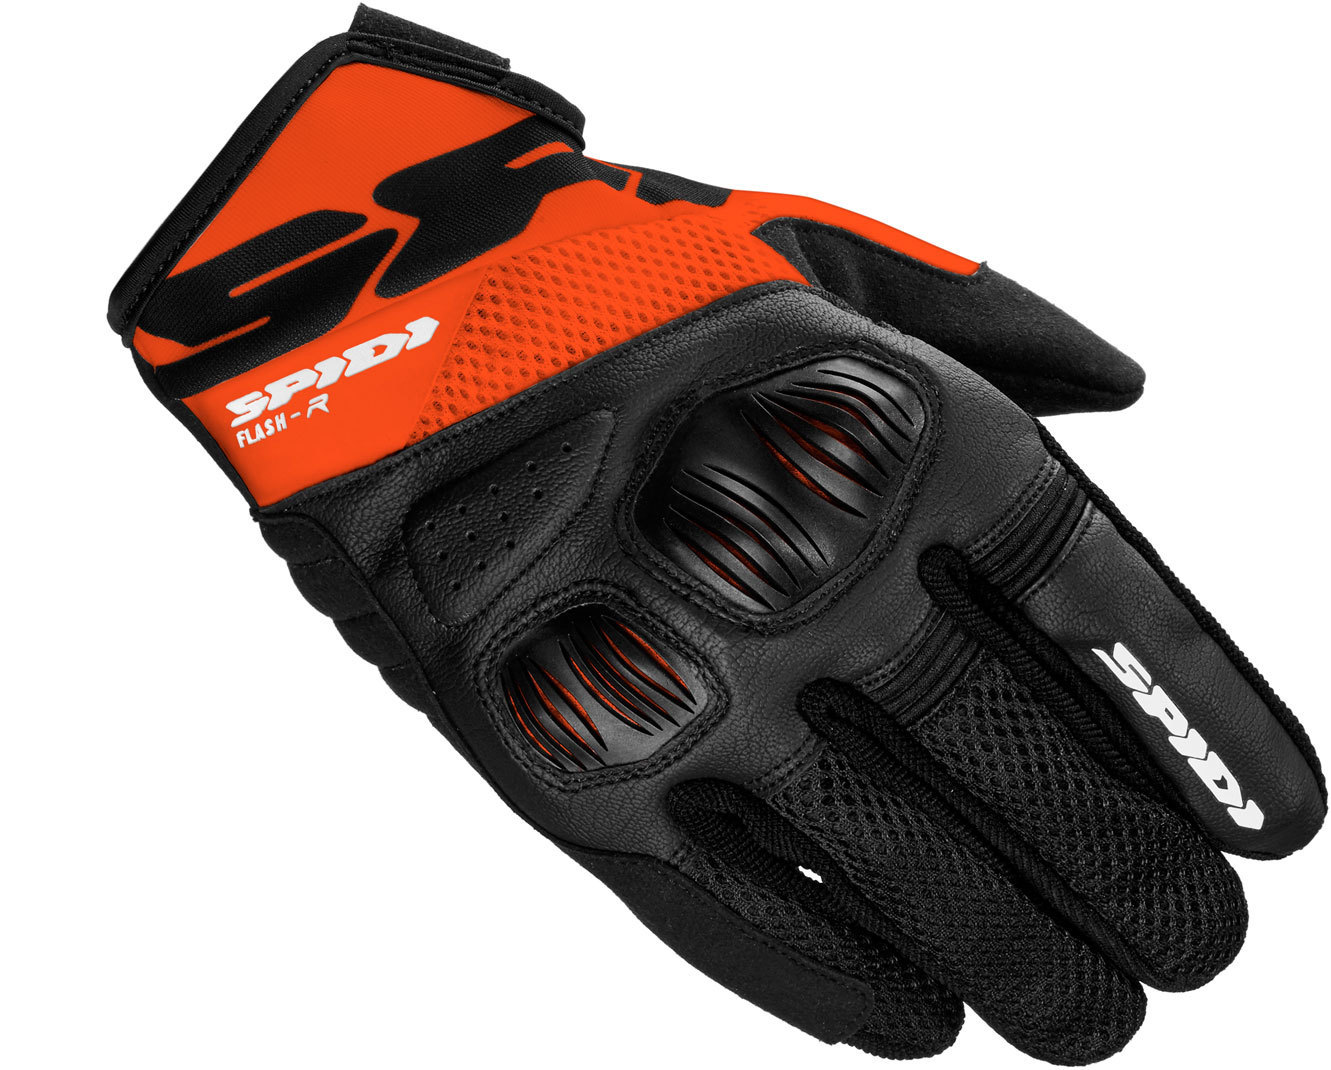 Spidi Flash-R Evo Handschuhe, schwarz-orange, Gre 3XL, schwarz-orange, Gre 3XL